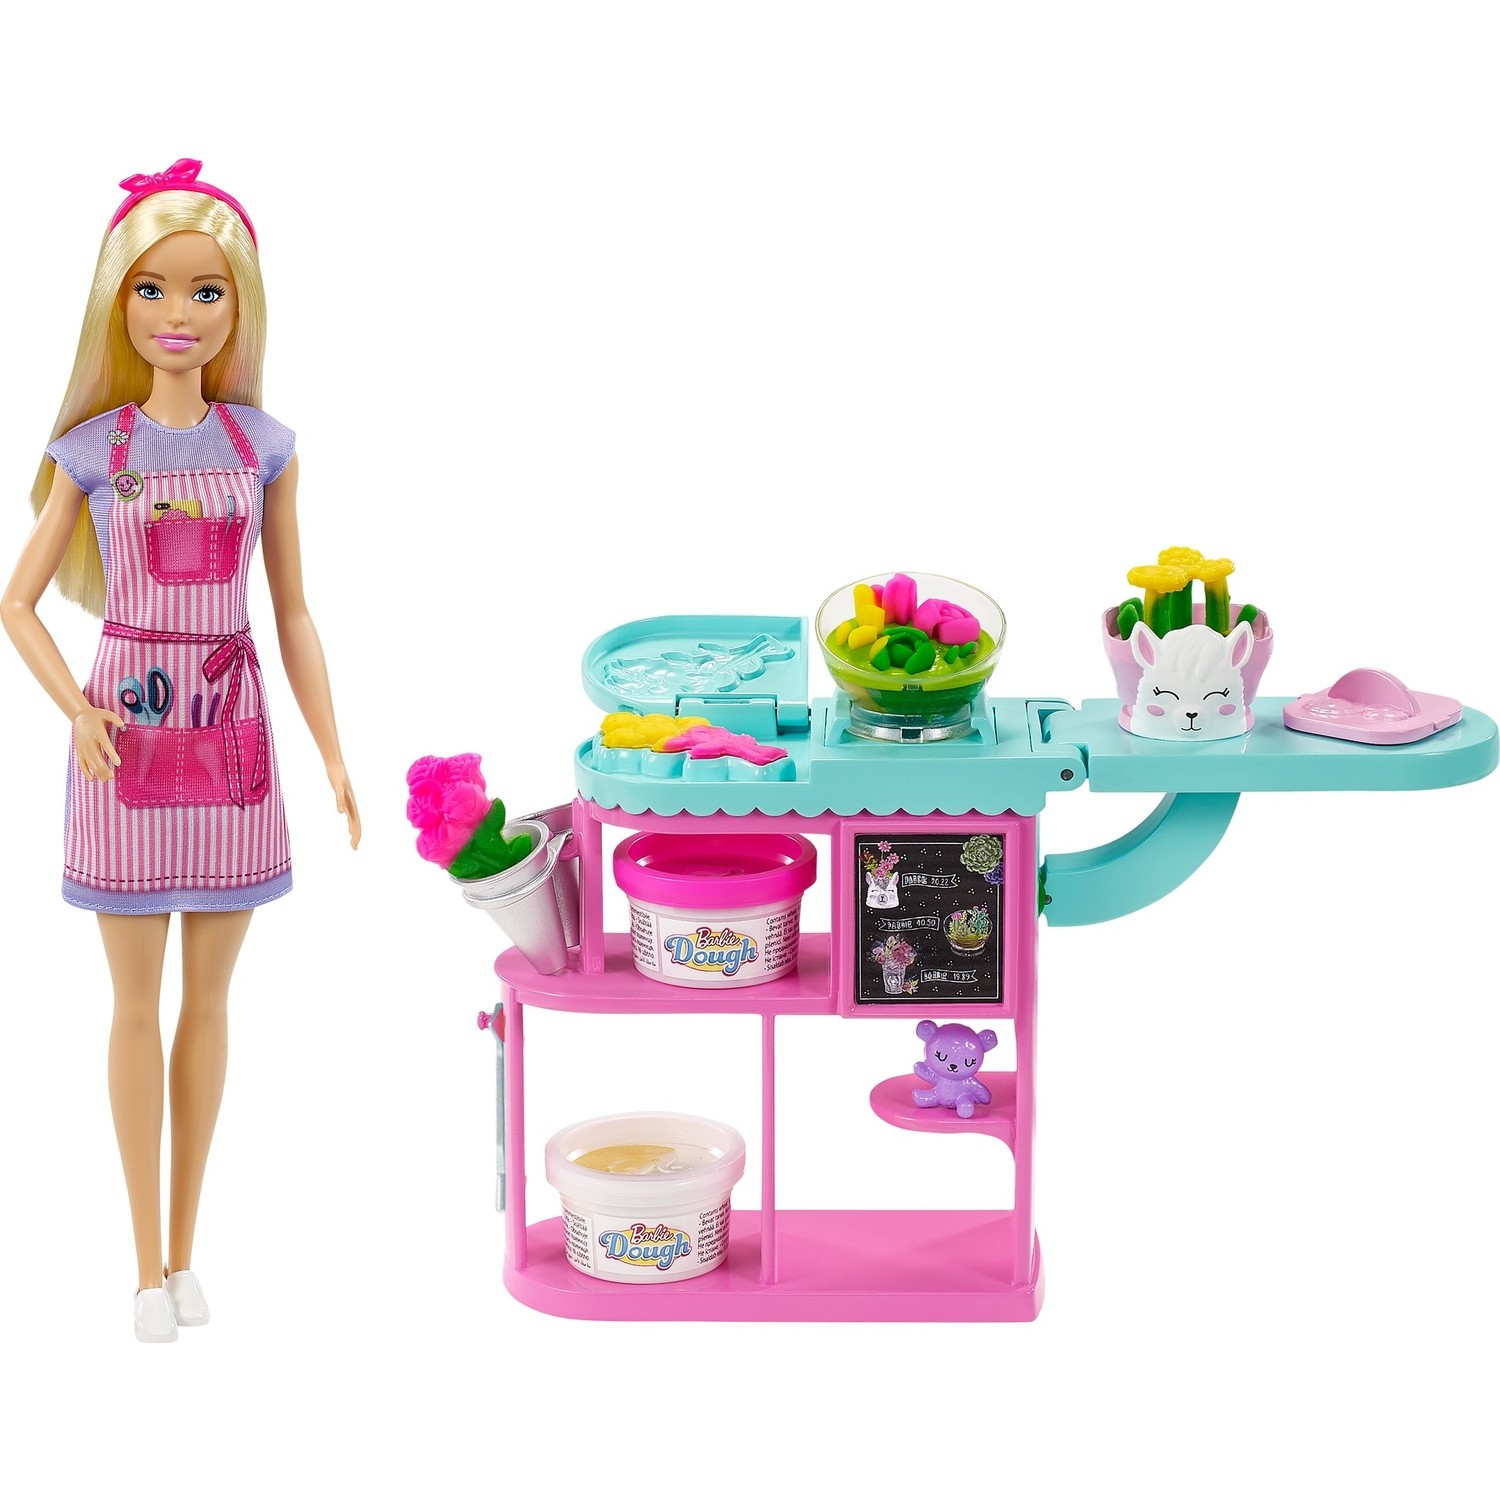 Кукла Barbie Чичекчи и игровой набор Gtn58 набор barbie виртуальный мир автомобиль с мини куклой 10 см dtw18